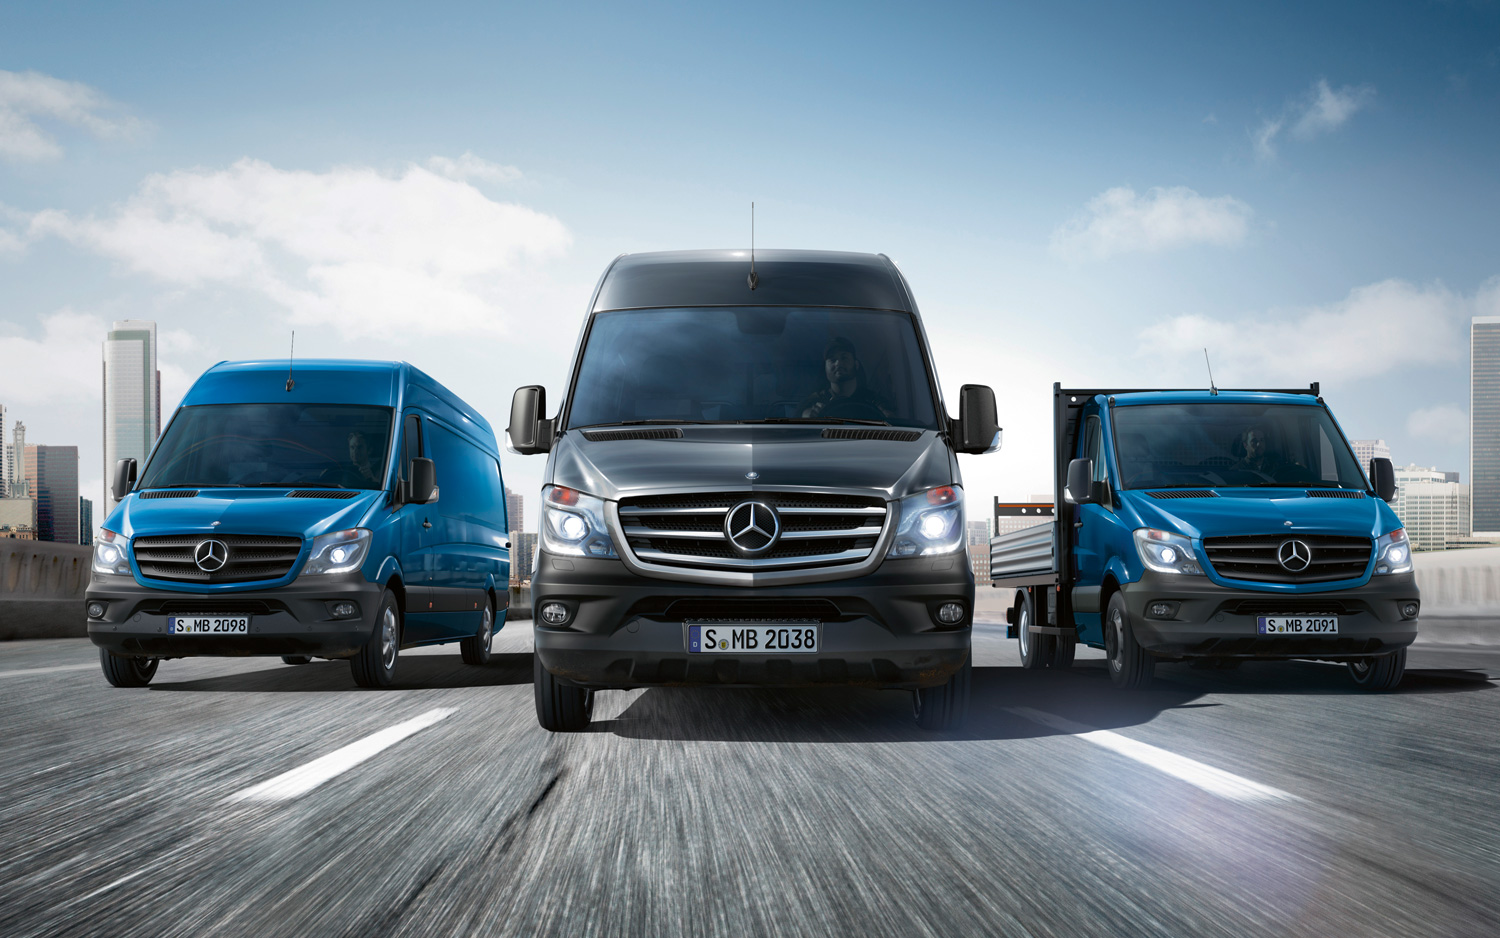 2014-Mercedes-Benz-Sprinter-lineup-front-view